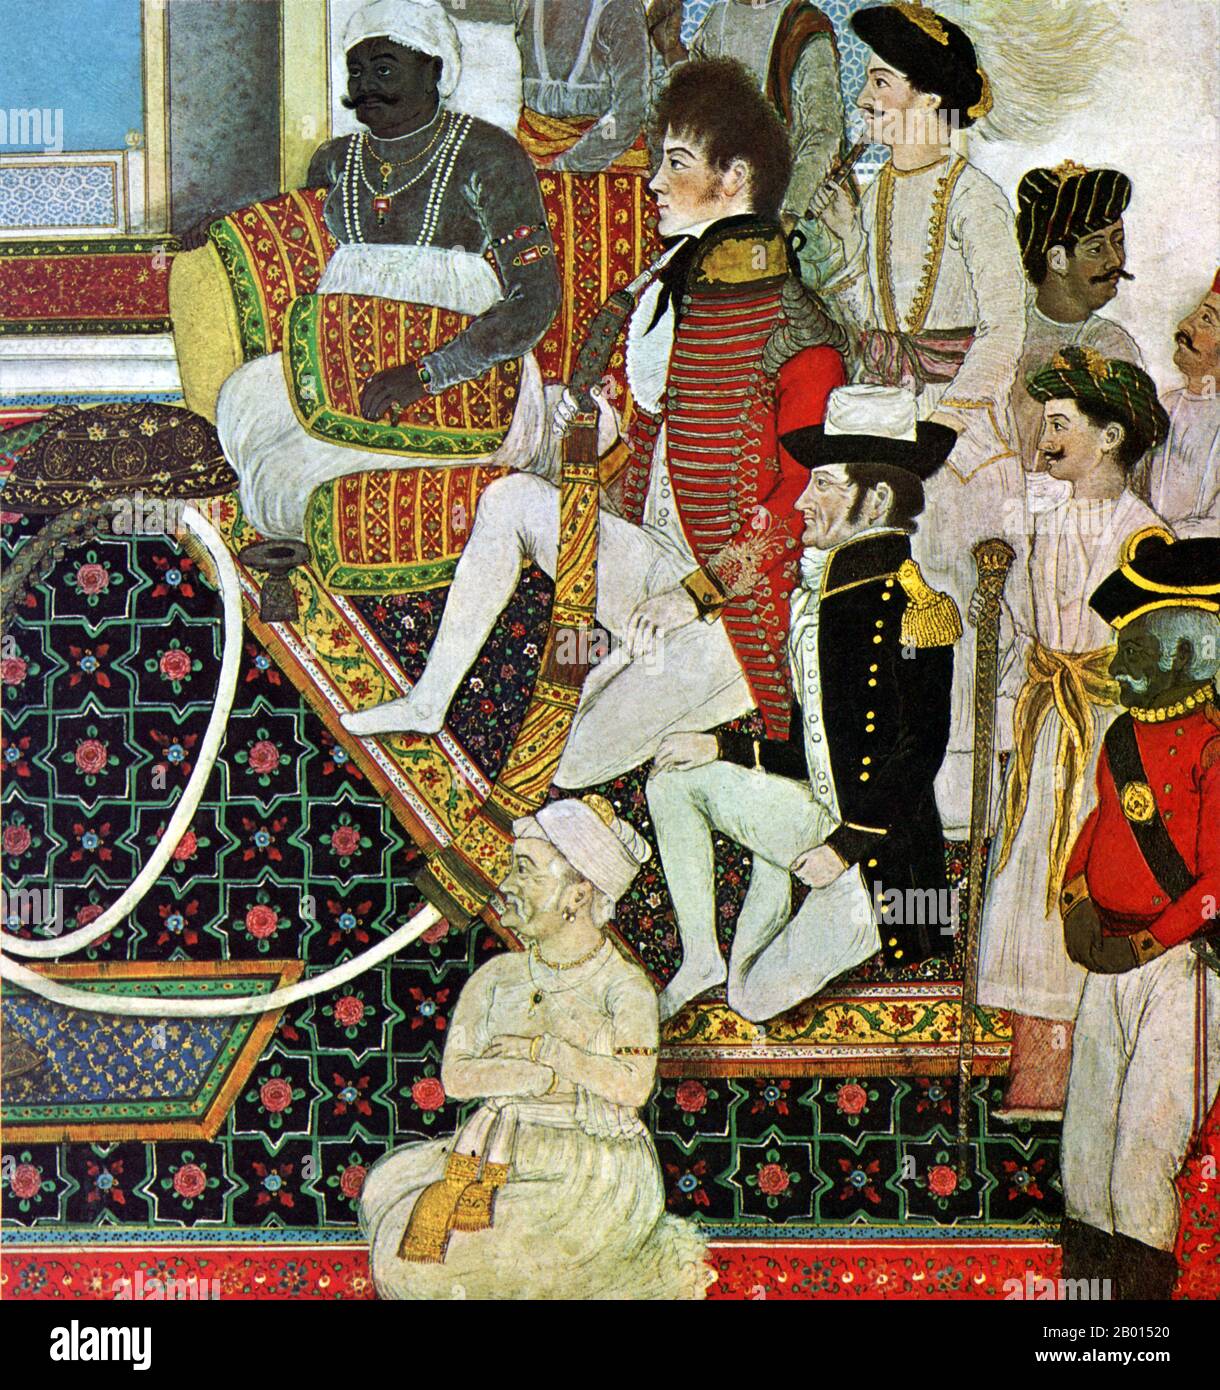 Indien: 'Prinz Mahadaji Sindhia Etertaining zwei britische Offiziere mit einem Nautch'. Gouache auf Papiermalerei, c. 1820. Kurz nach der Niederlage der spanischen Armada im Jahr 1588 reichte eine Gruppe Londoner Kaufleute eine Petition an Königin Elisabeth I. ein, um die Erlaubnis zum Indischen Ozean zu erhalten. Trotz der frühen Segelkatastrophen wurde die East India Company 1600 gegründet. Nach dem Unionsvertrag im Jahr 1707 wurde sie zur British East India Company. Es handelte sich um eine Aktiengesellschaft, die ursprünglich gegründet wurde, um den Handel mit den ostindischen Inseln zu verfolgen, aber letztendlich hauptsächlich mit dem indischen Subkontinent gehandelt wurde. Stockfoto